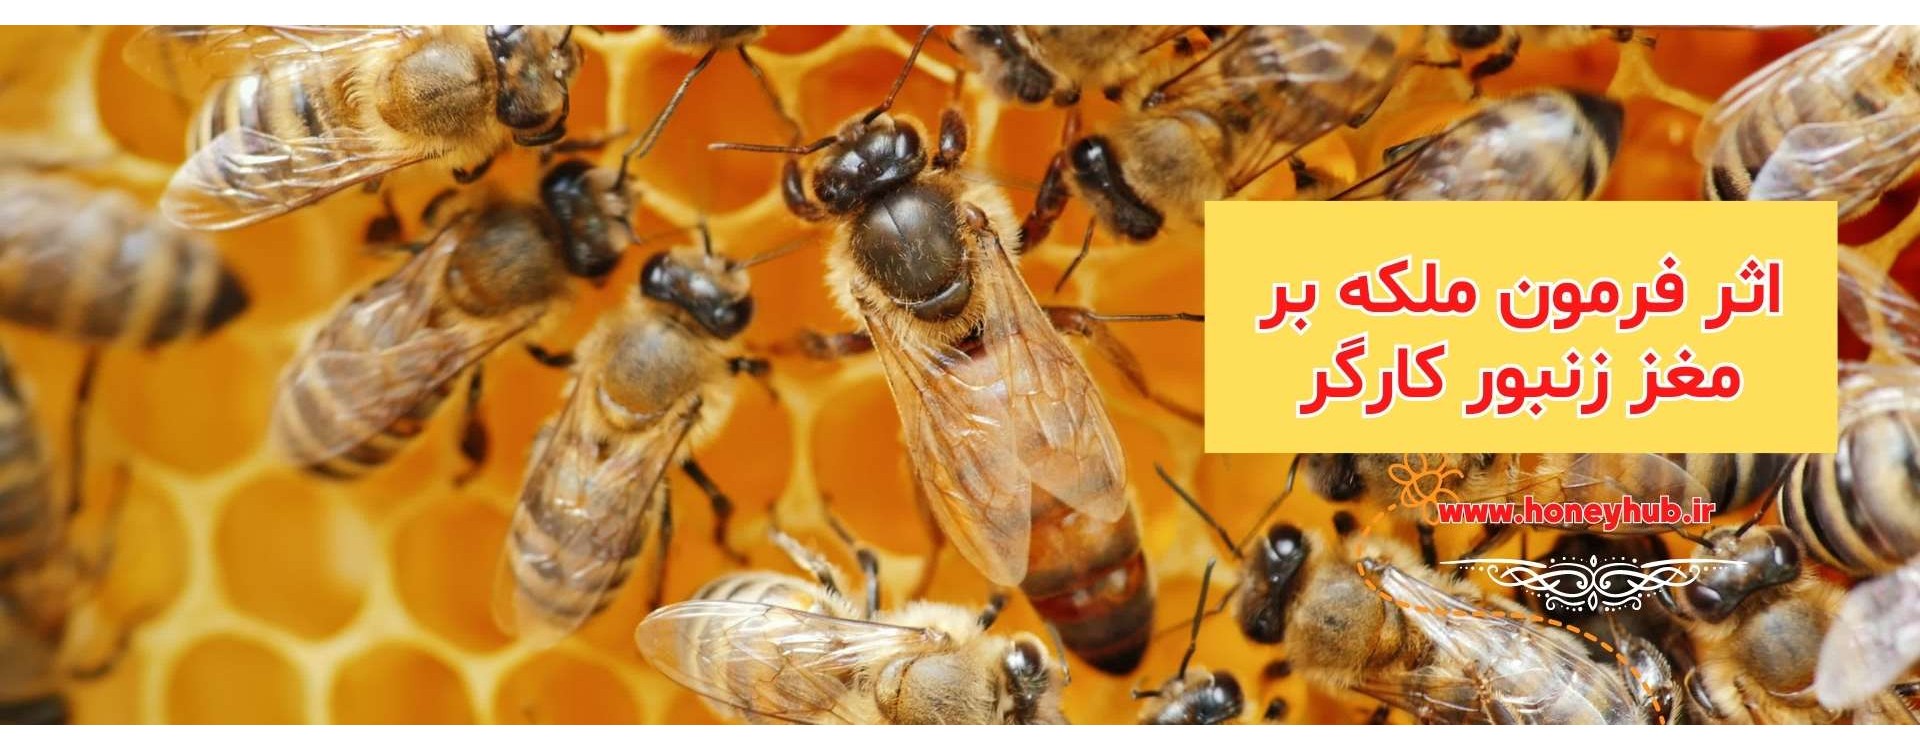 اثرات فرمون های ملکه بر مغز زنبورهای کارگر